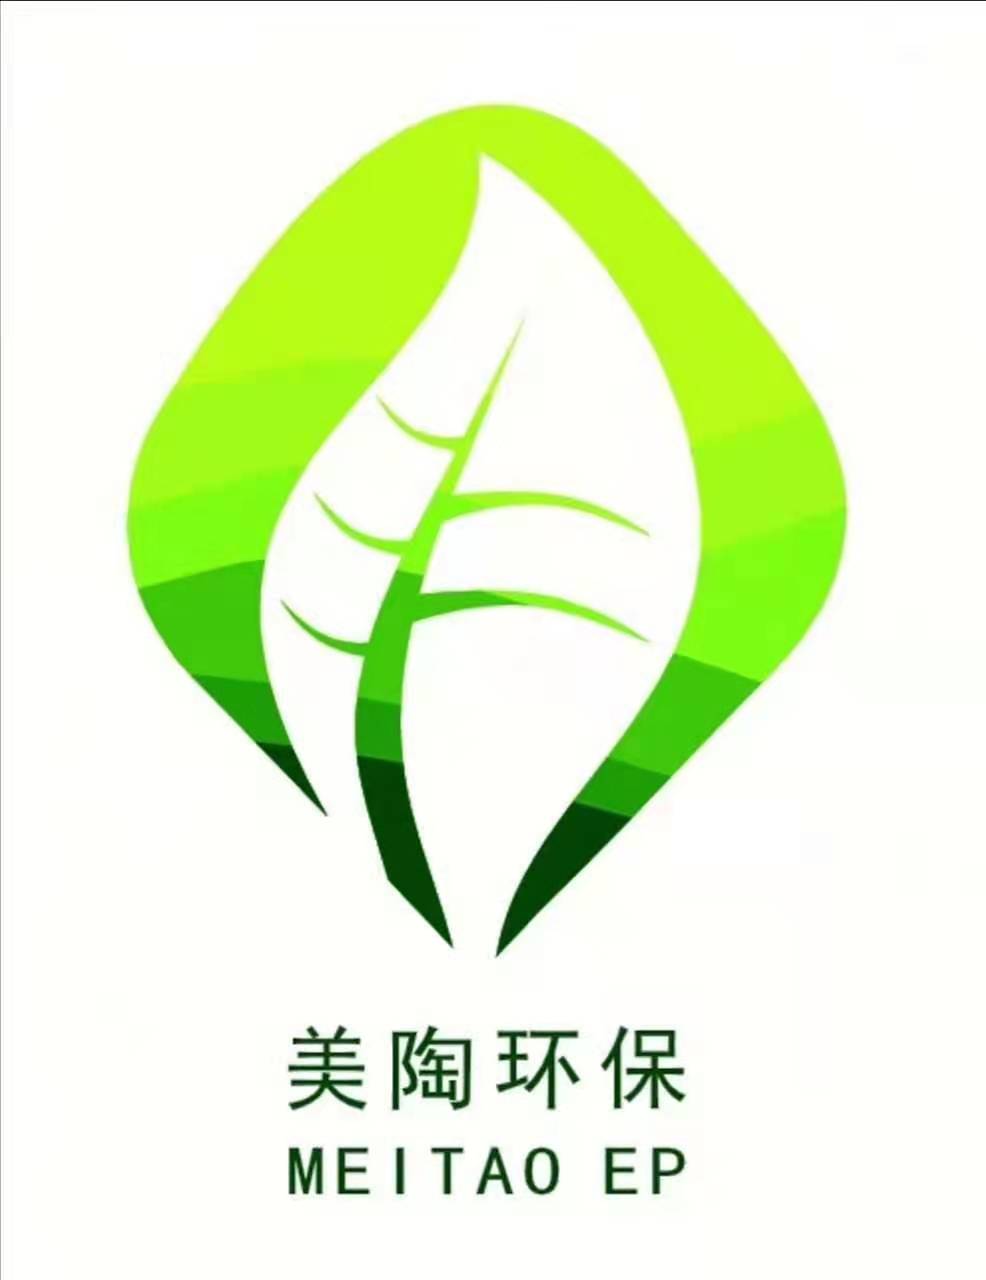 武平美陶環保科技有限公司